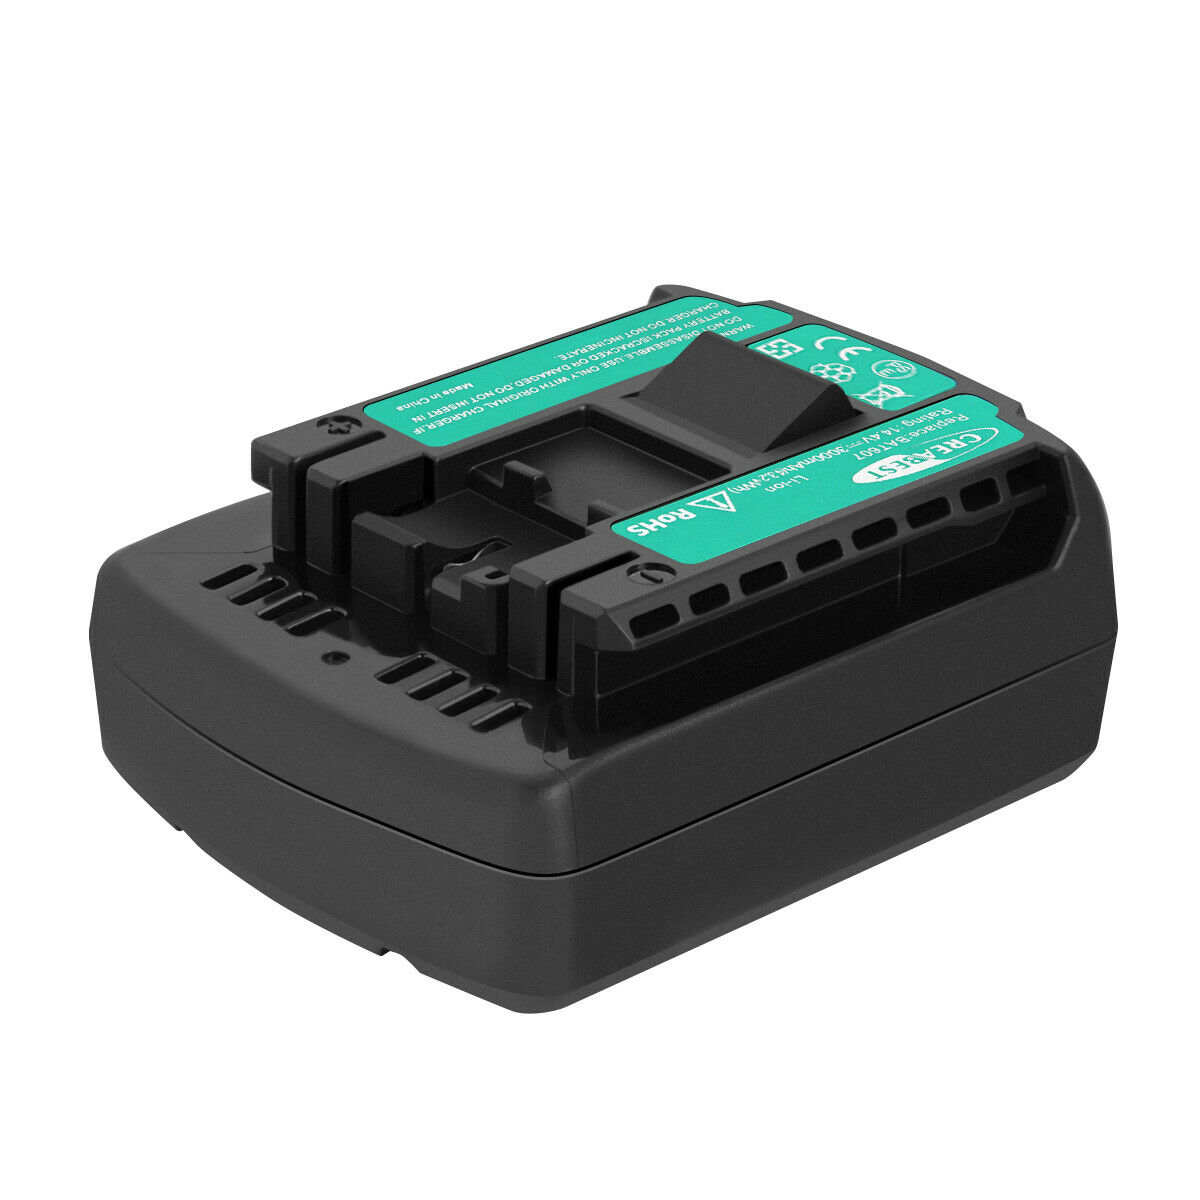 Batería Bosch DDB180-02,GDR 1080-LI,GDR 14.4 V-LI,GDR 14.4 V-LI MF(compatible)